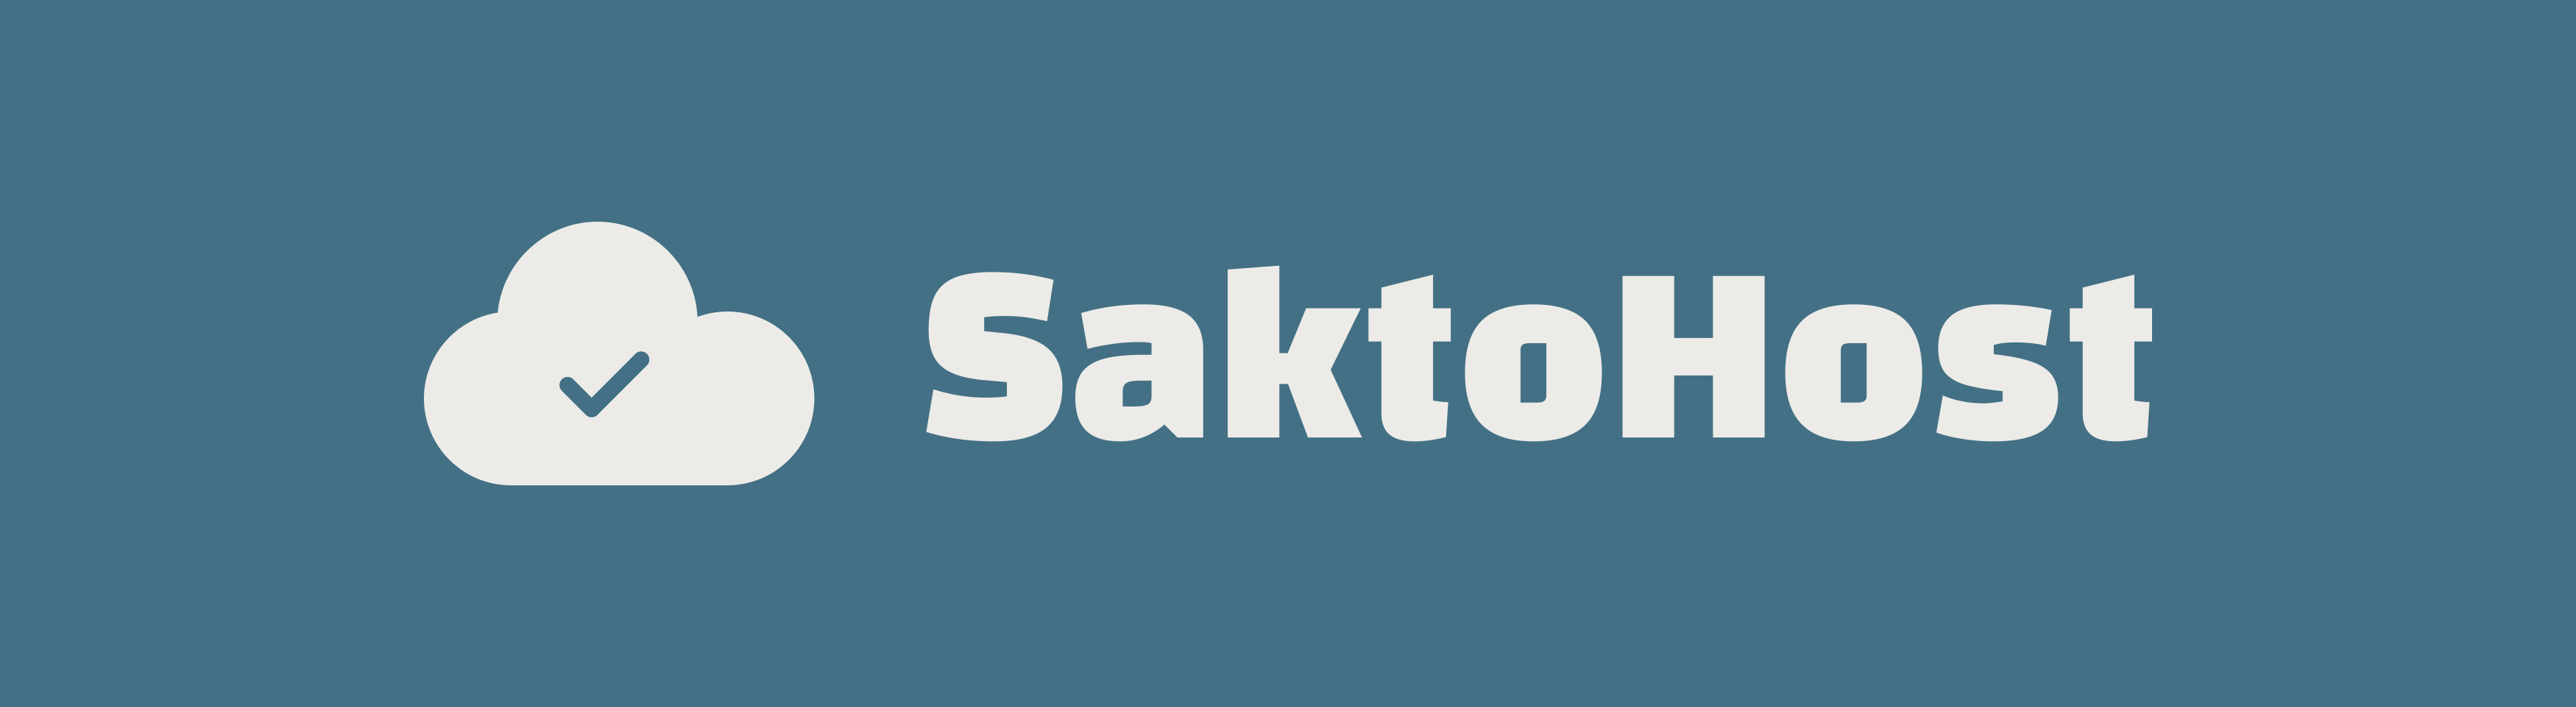 SaktoHost